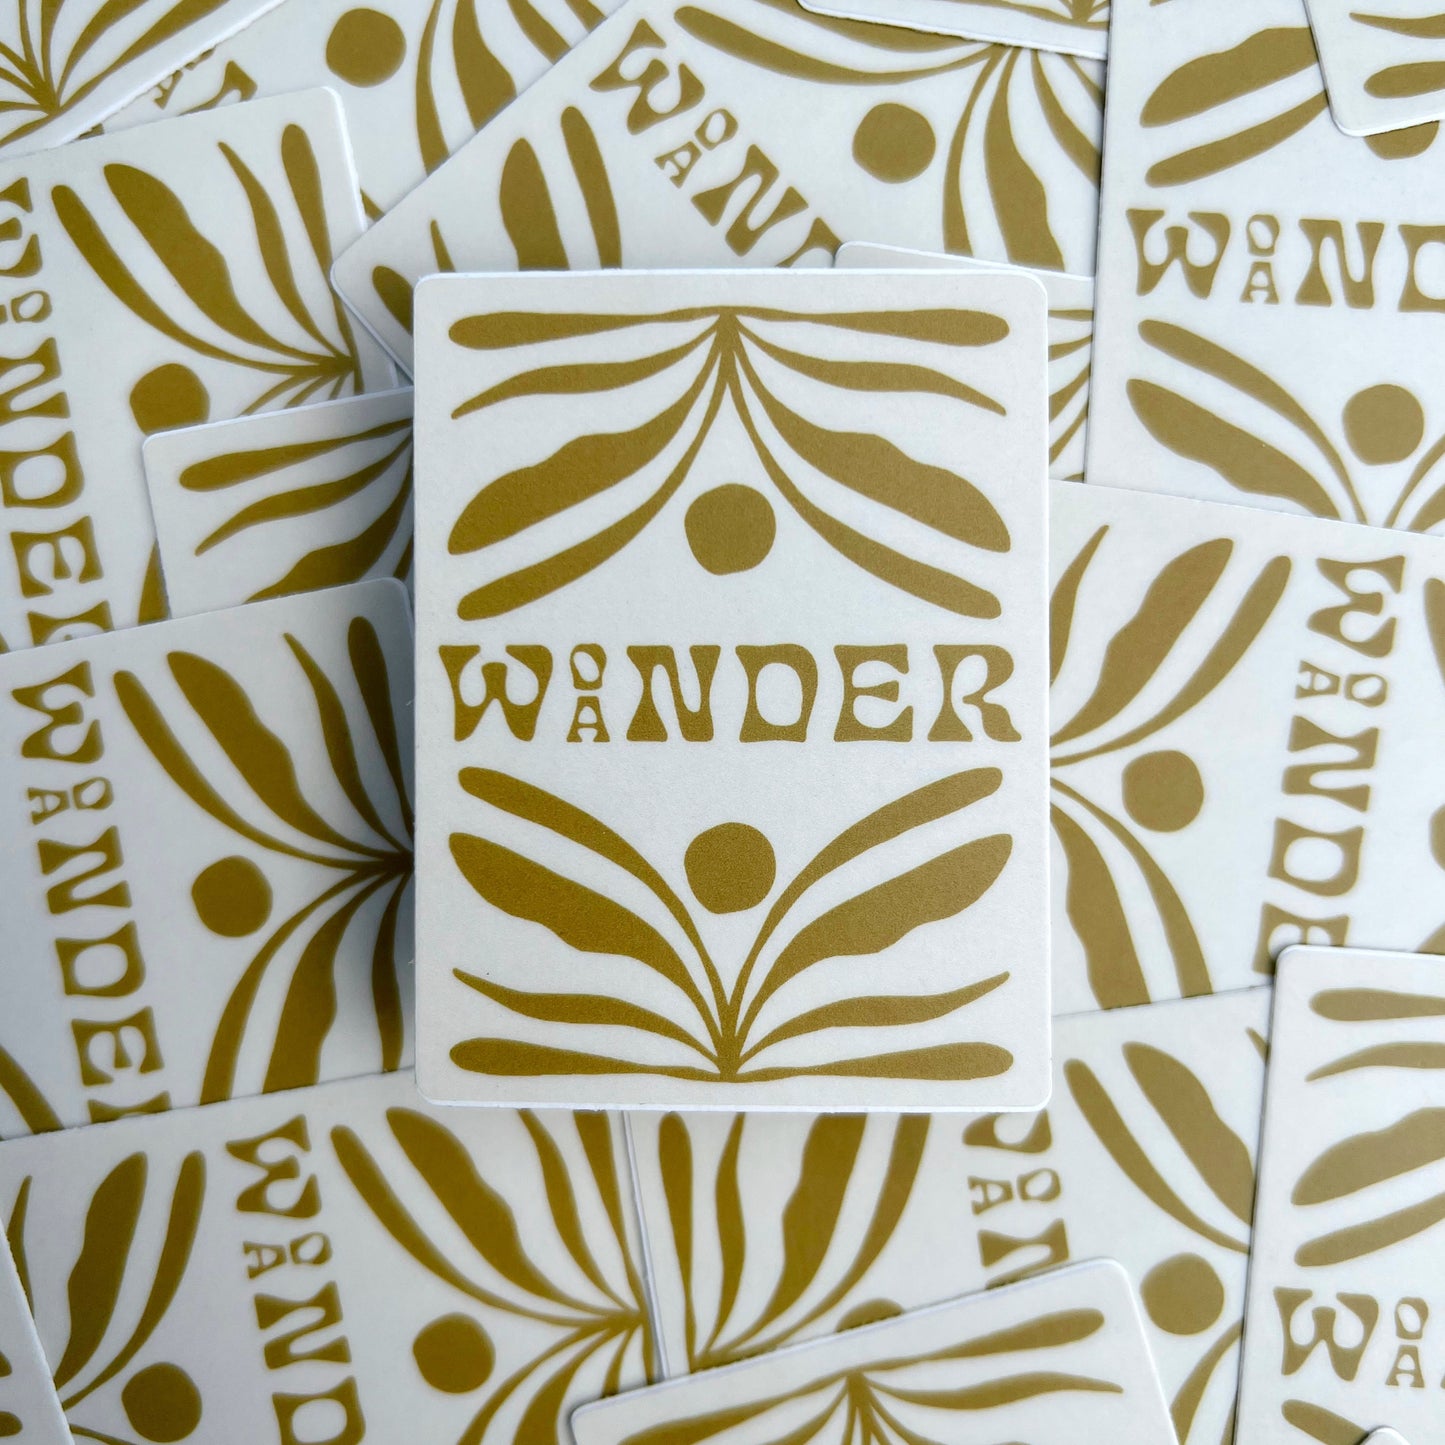 Wonder/Wander - Vinyl Sticker